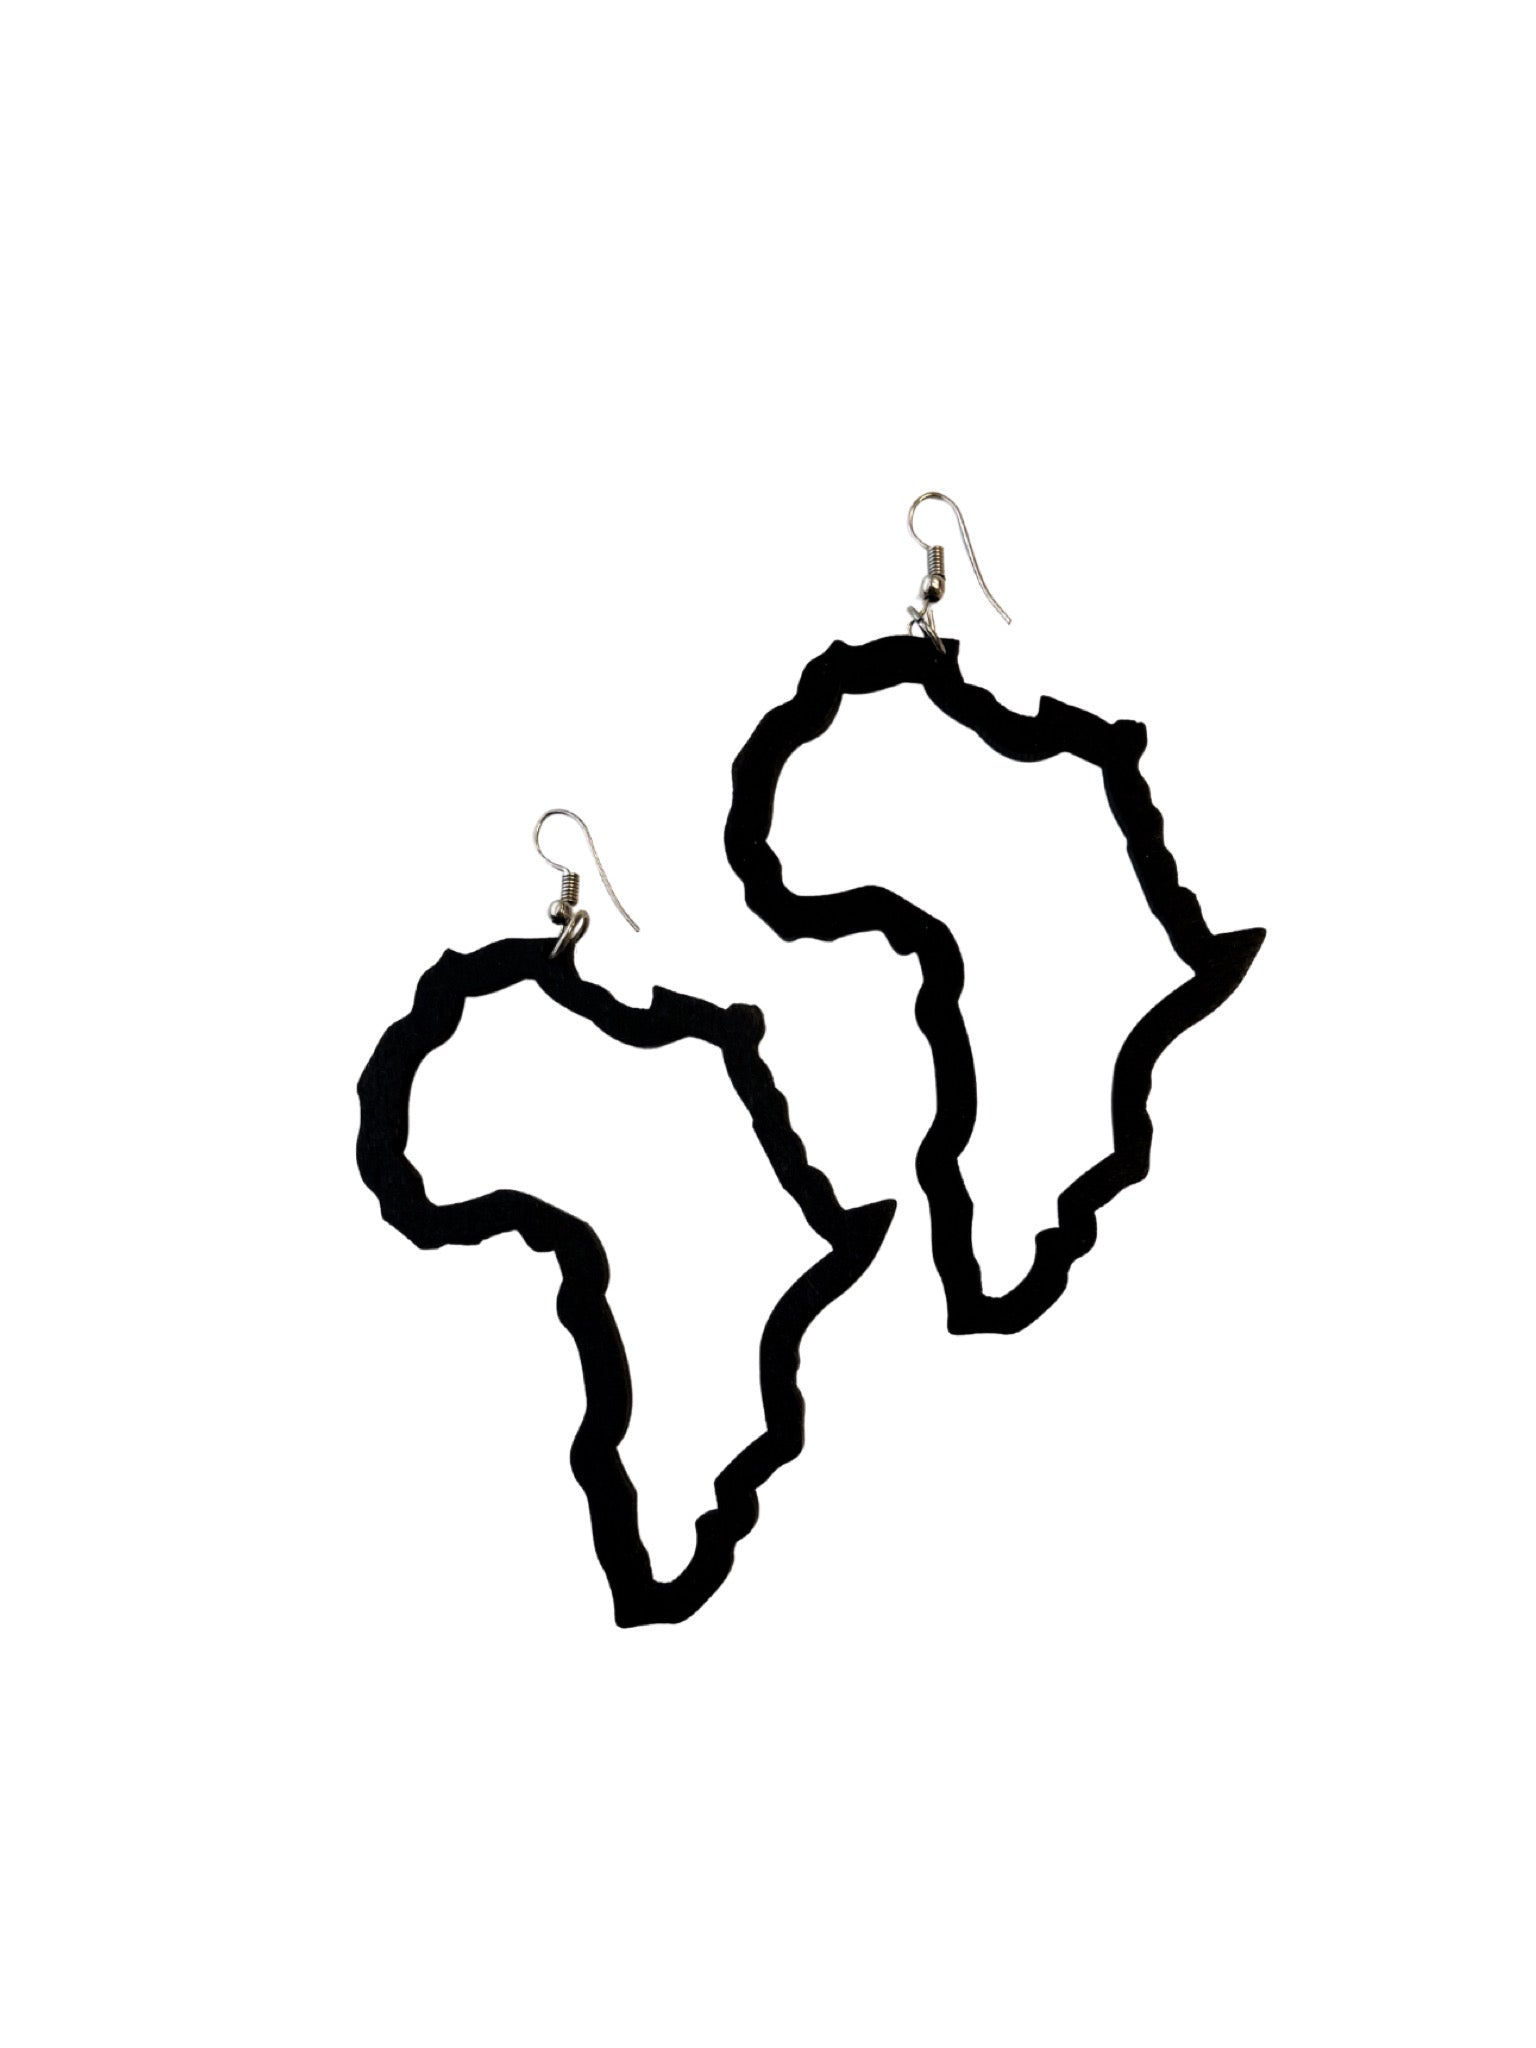 africa map outline black